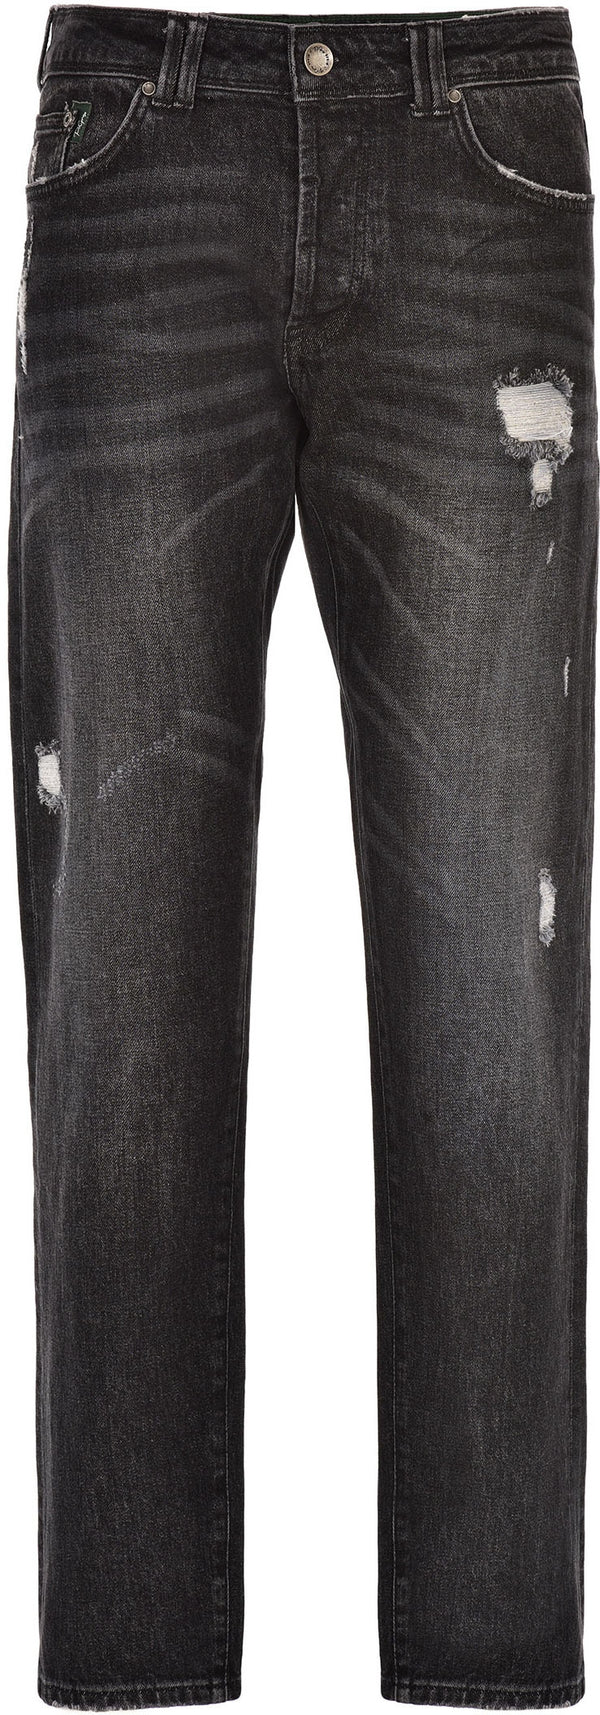 P.Grax pantaloni jeans Tailor Tapared Fit black